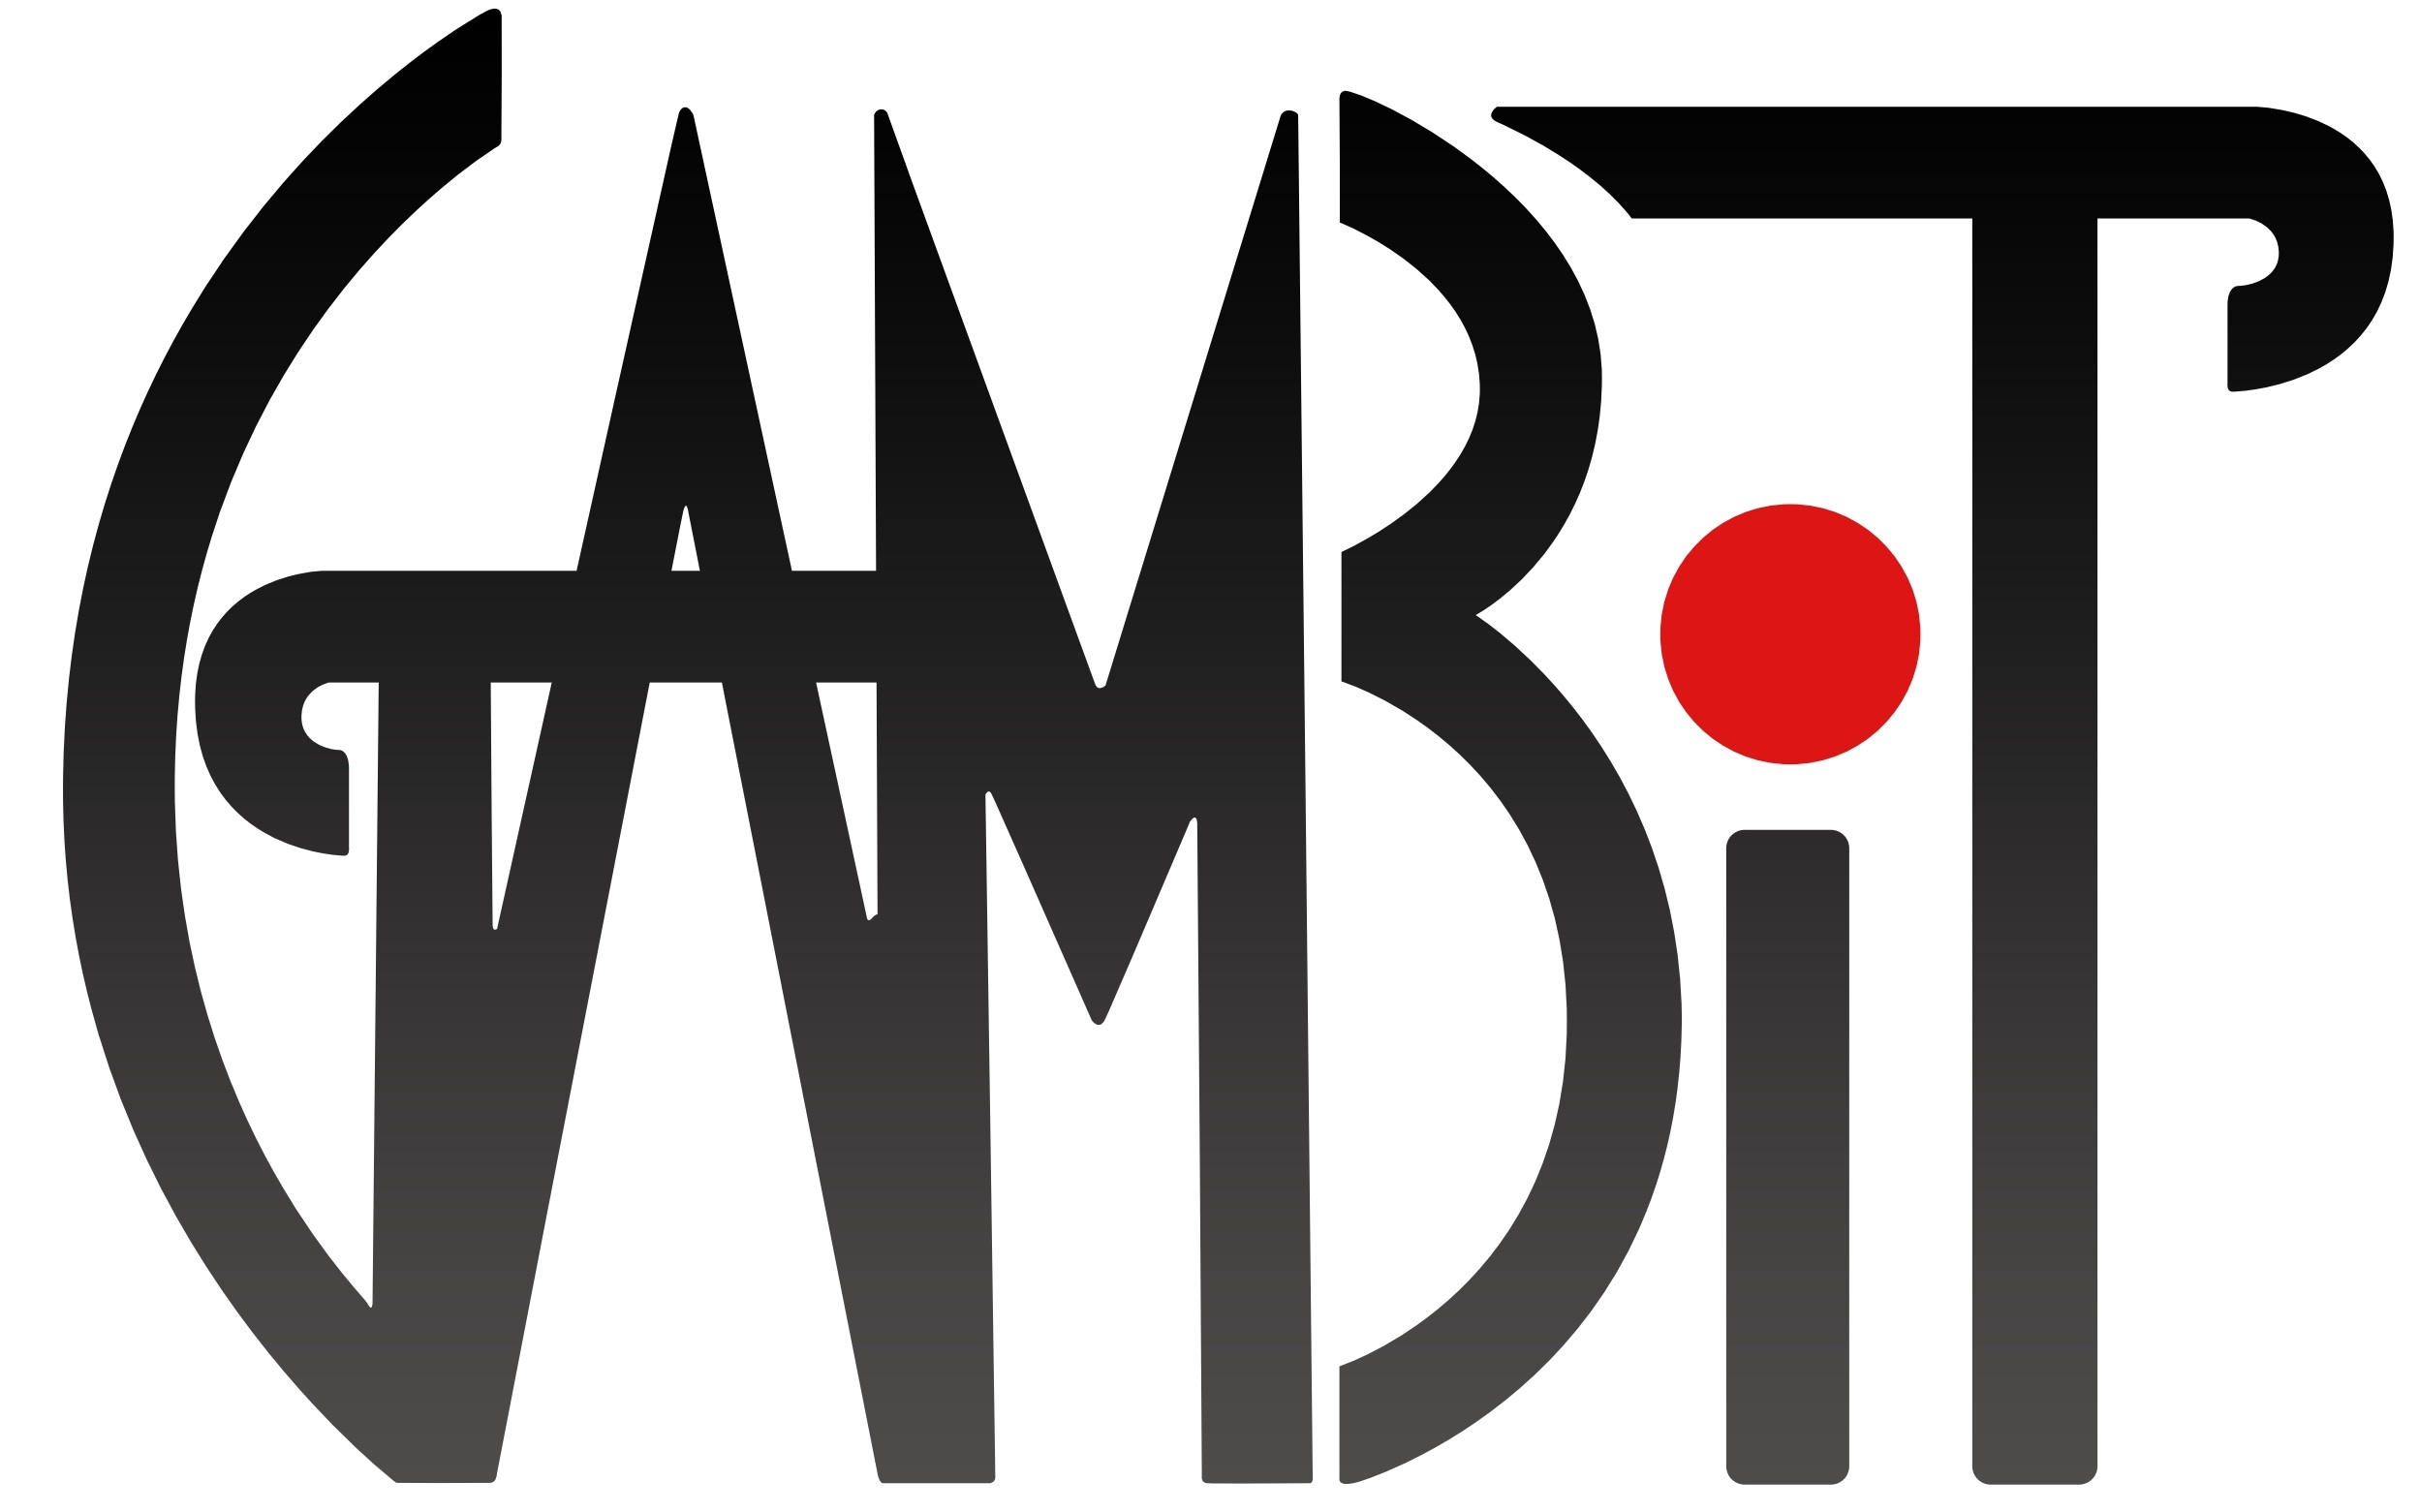 GAMBIT Logo.jpg c162ff049386eb36e059f8228e3a6c1a